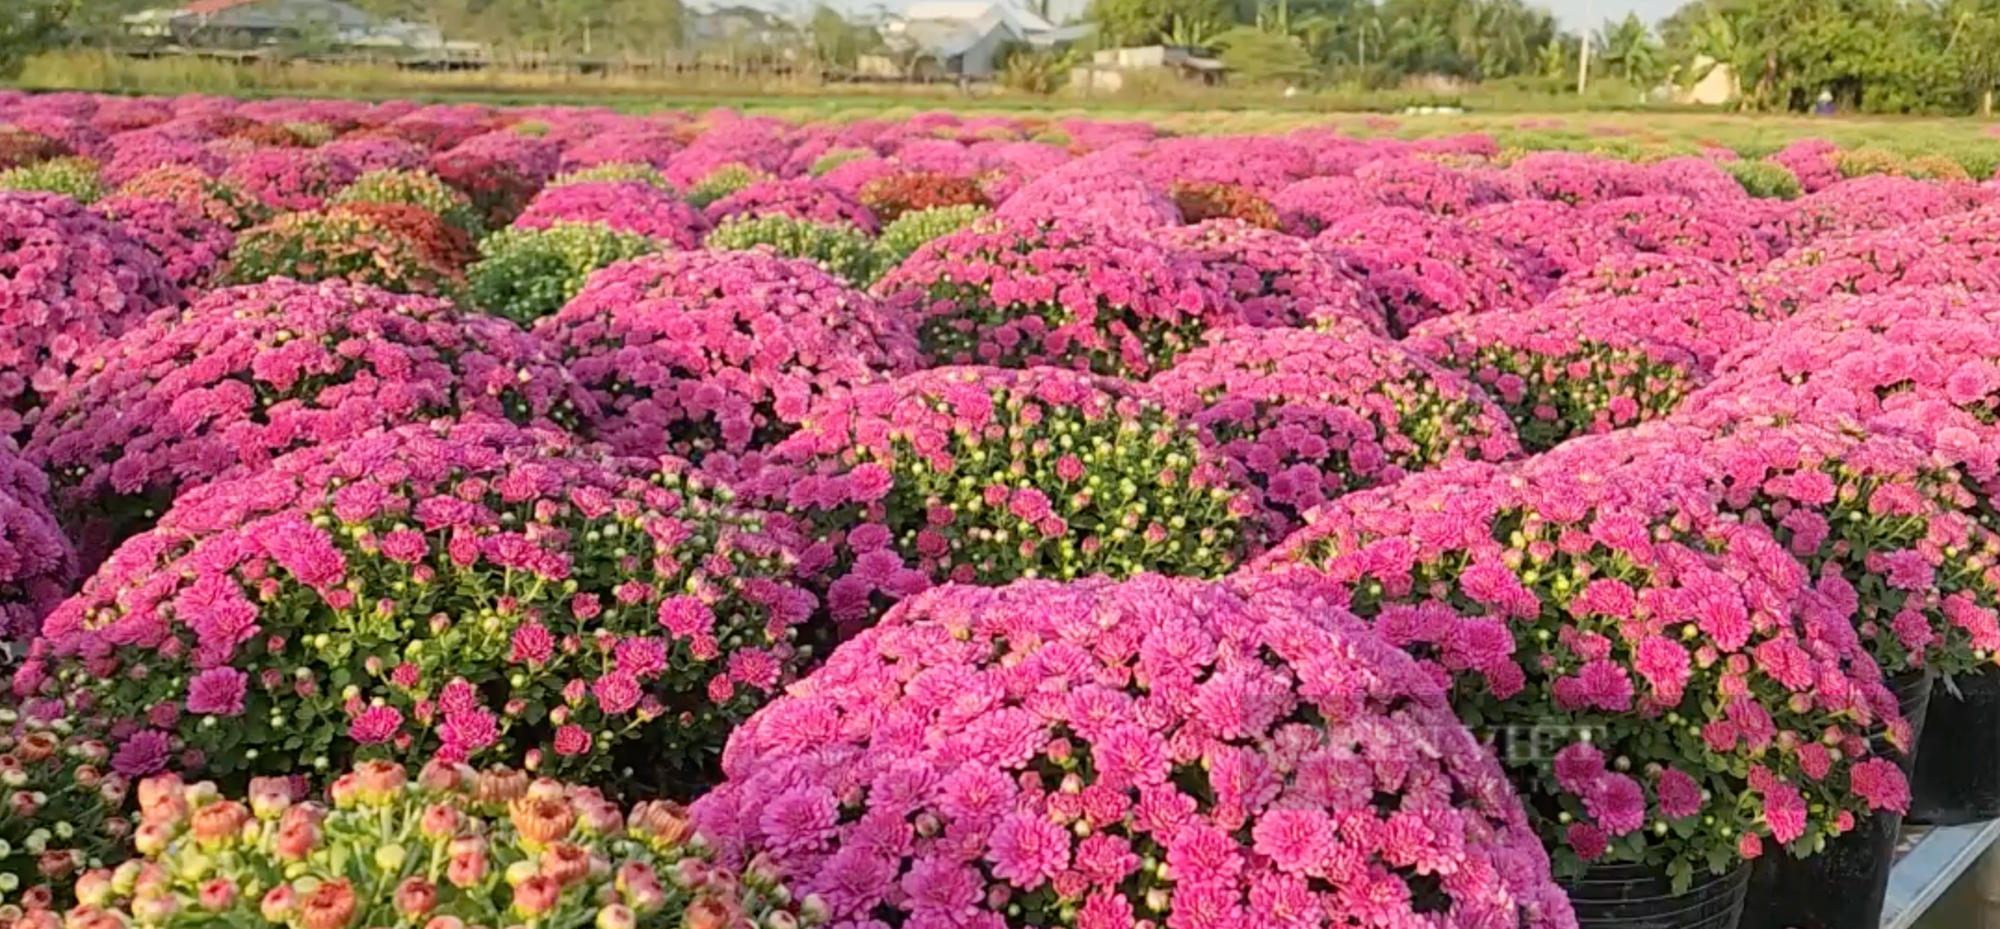 Ngắm 3.000 nghìn chậu cúc mâm xôi nhiều màu ở làng hoa Sa Đéc - Ảnh 1.